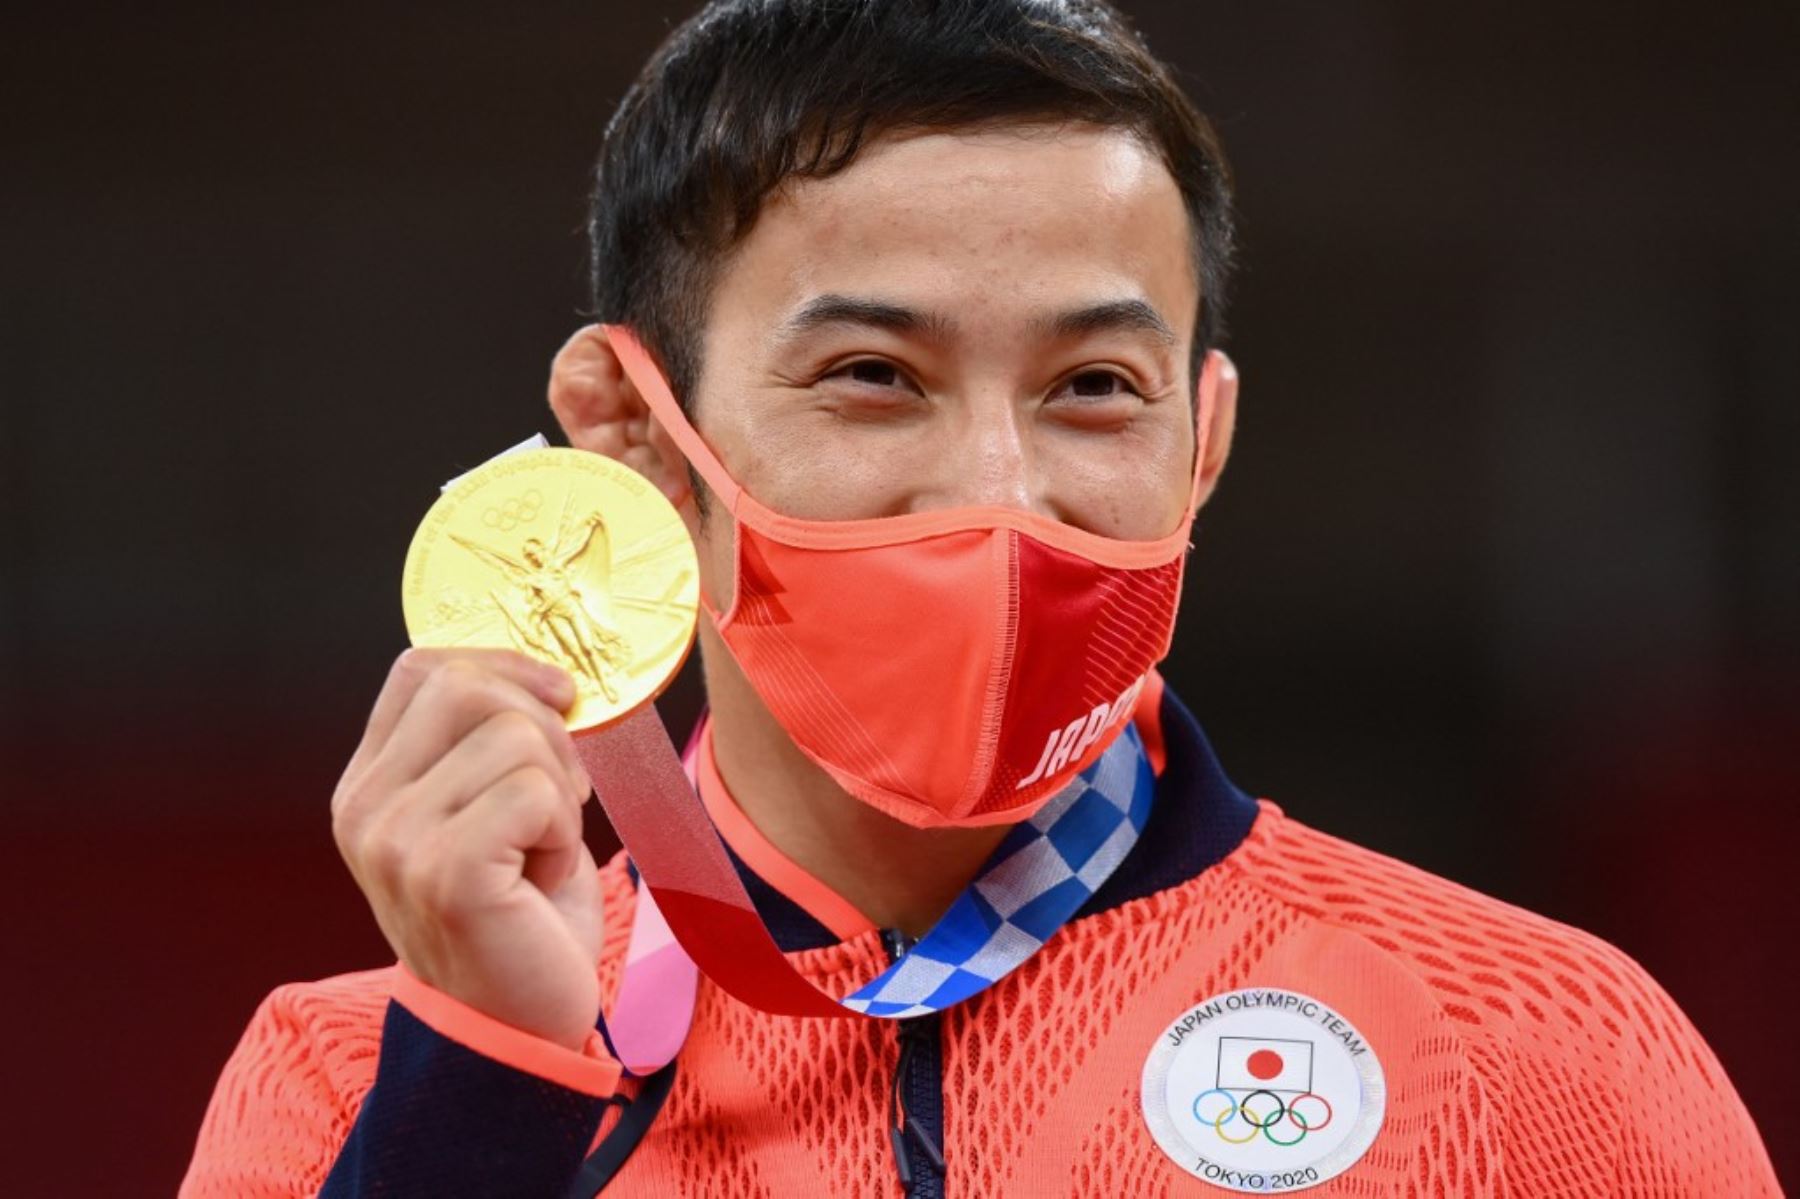 El judoca Naohisa Takato le brinda la primera medalla dorada al país anfitrión de los juegos olímpicos.